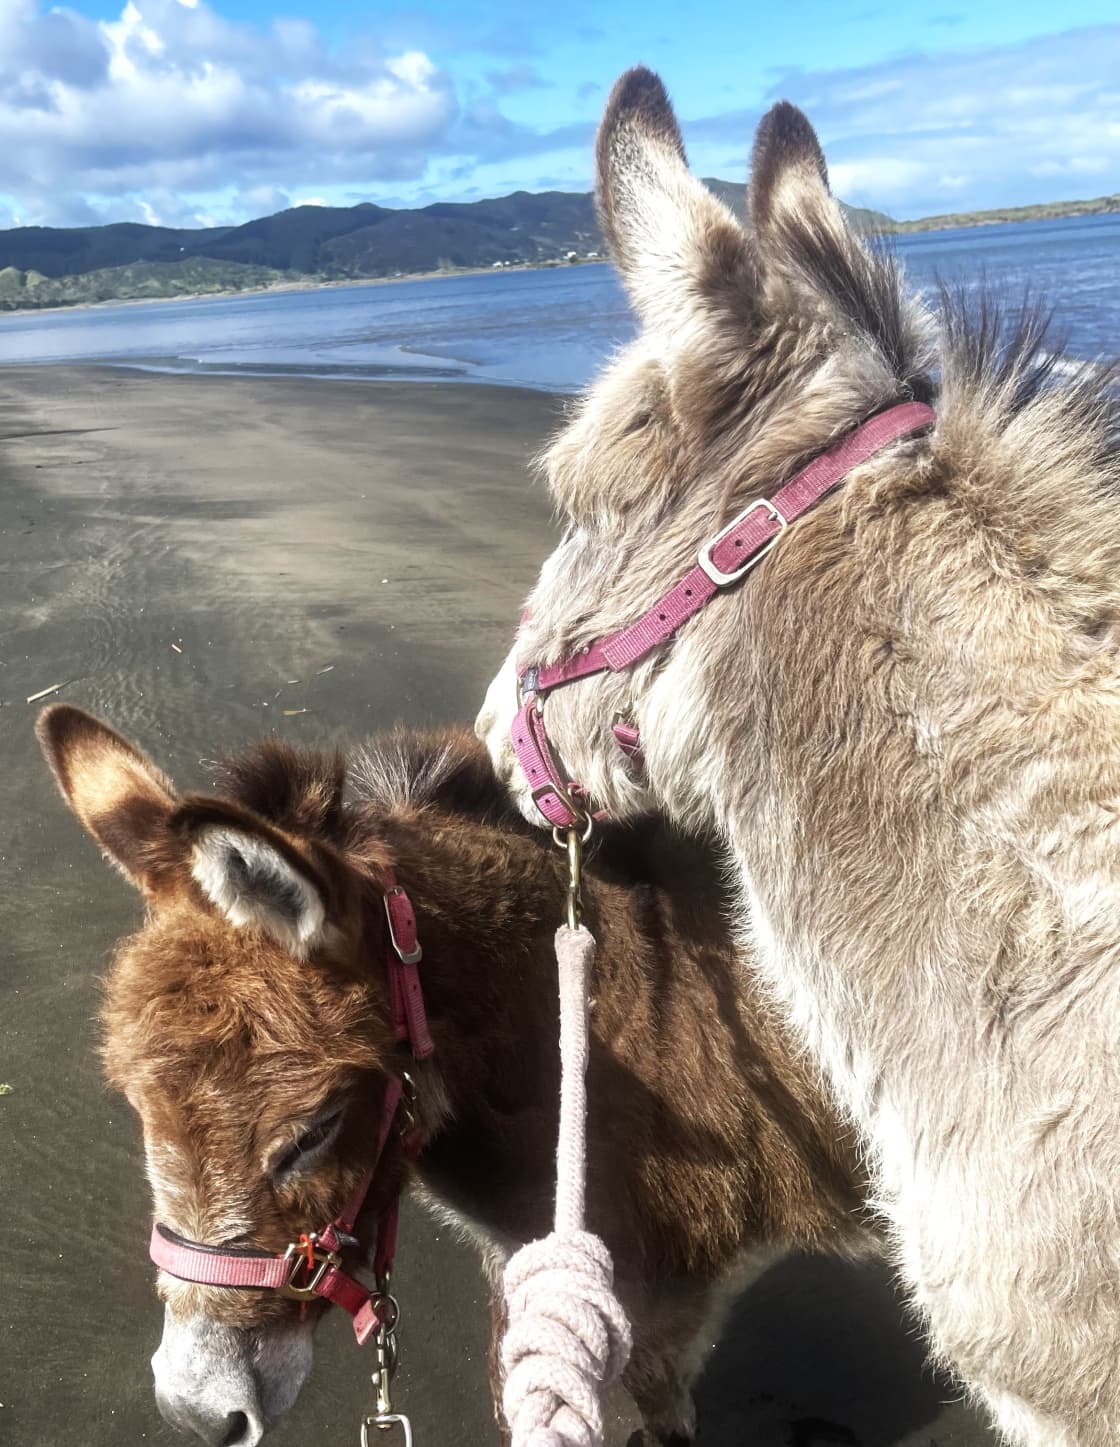 Duke & Daisy enjoying a beach walk